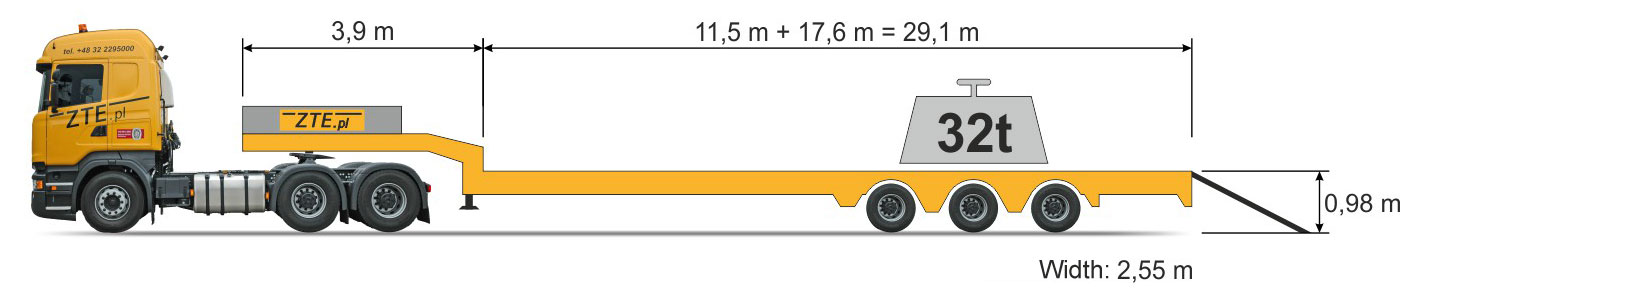 3-axle Semi semi-trailer